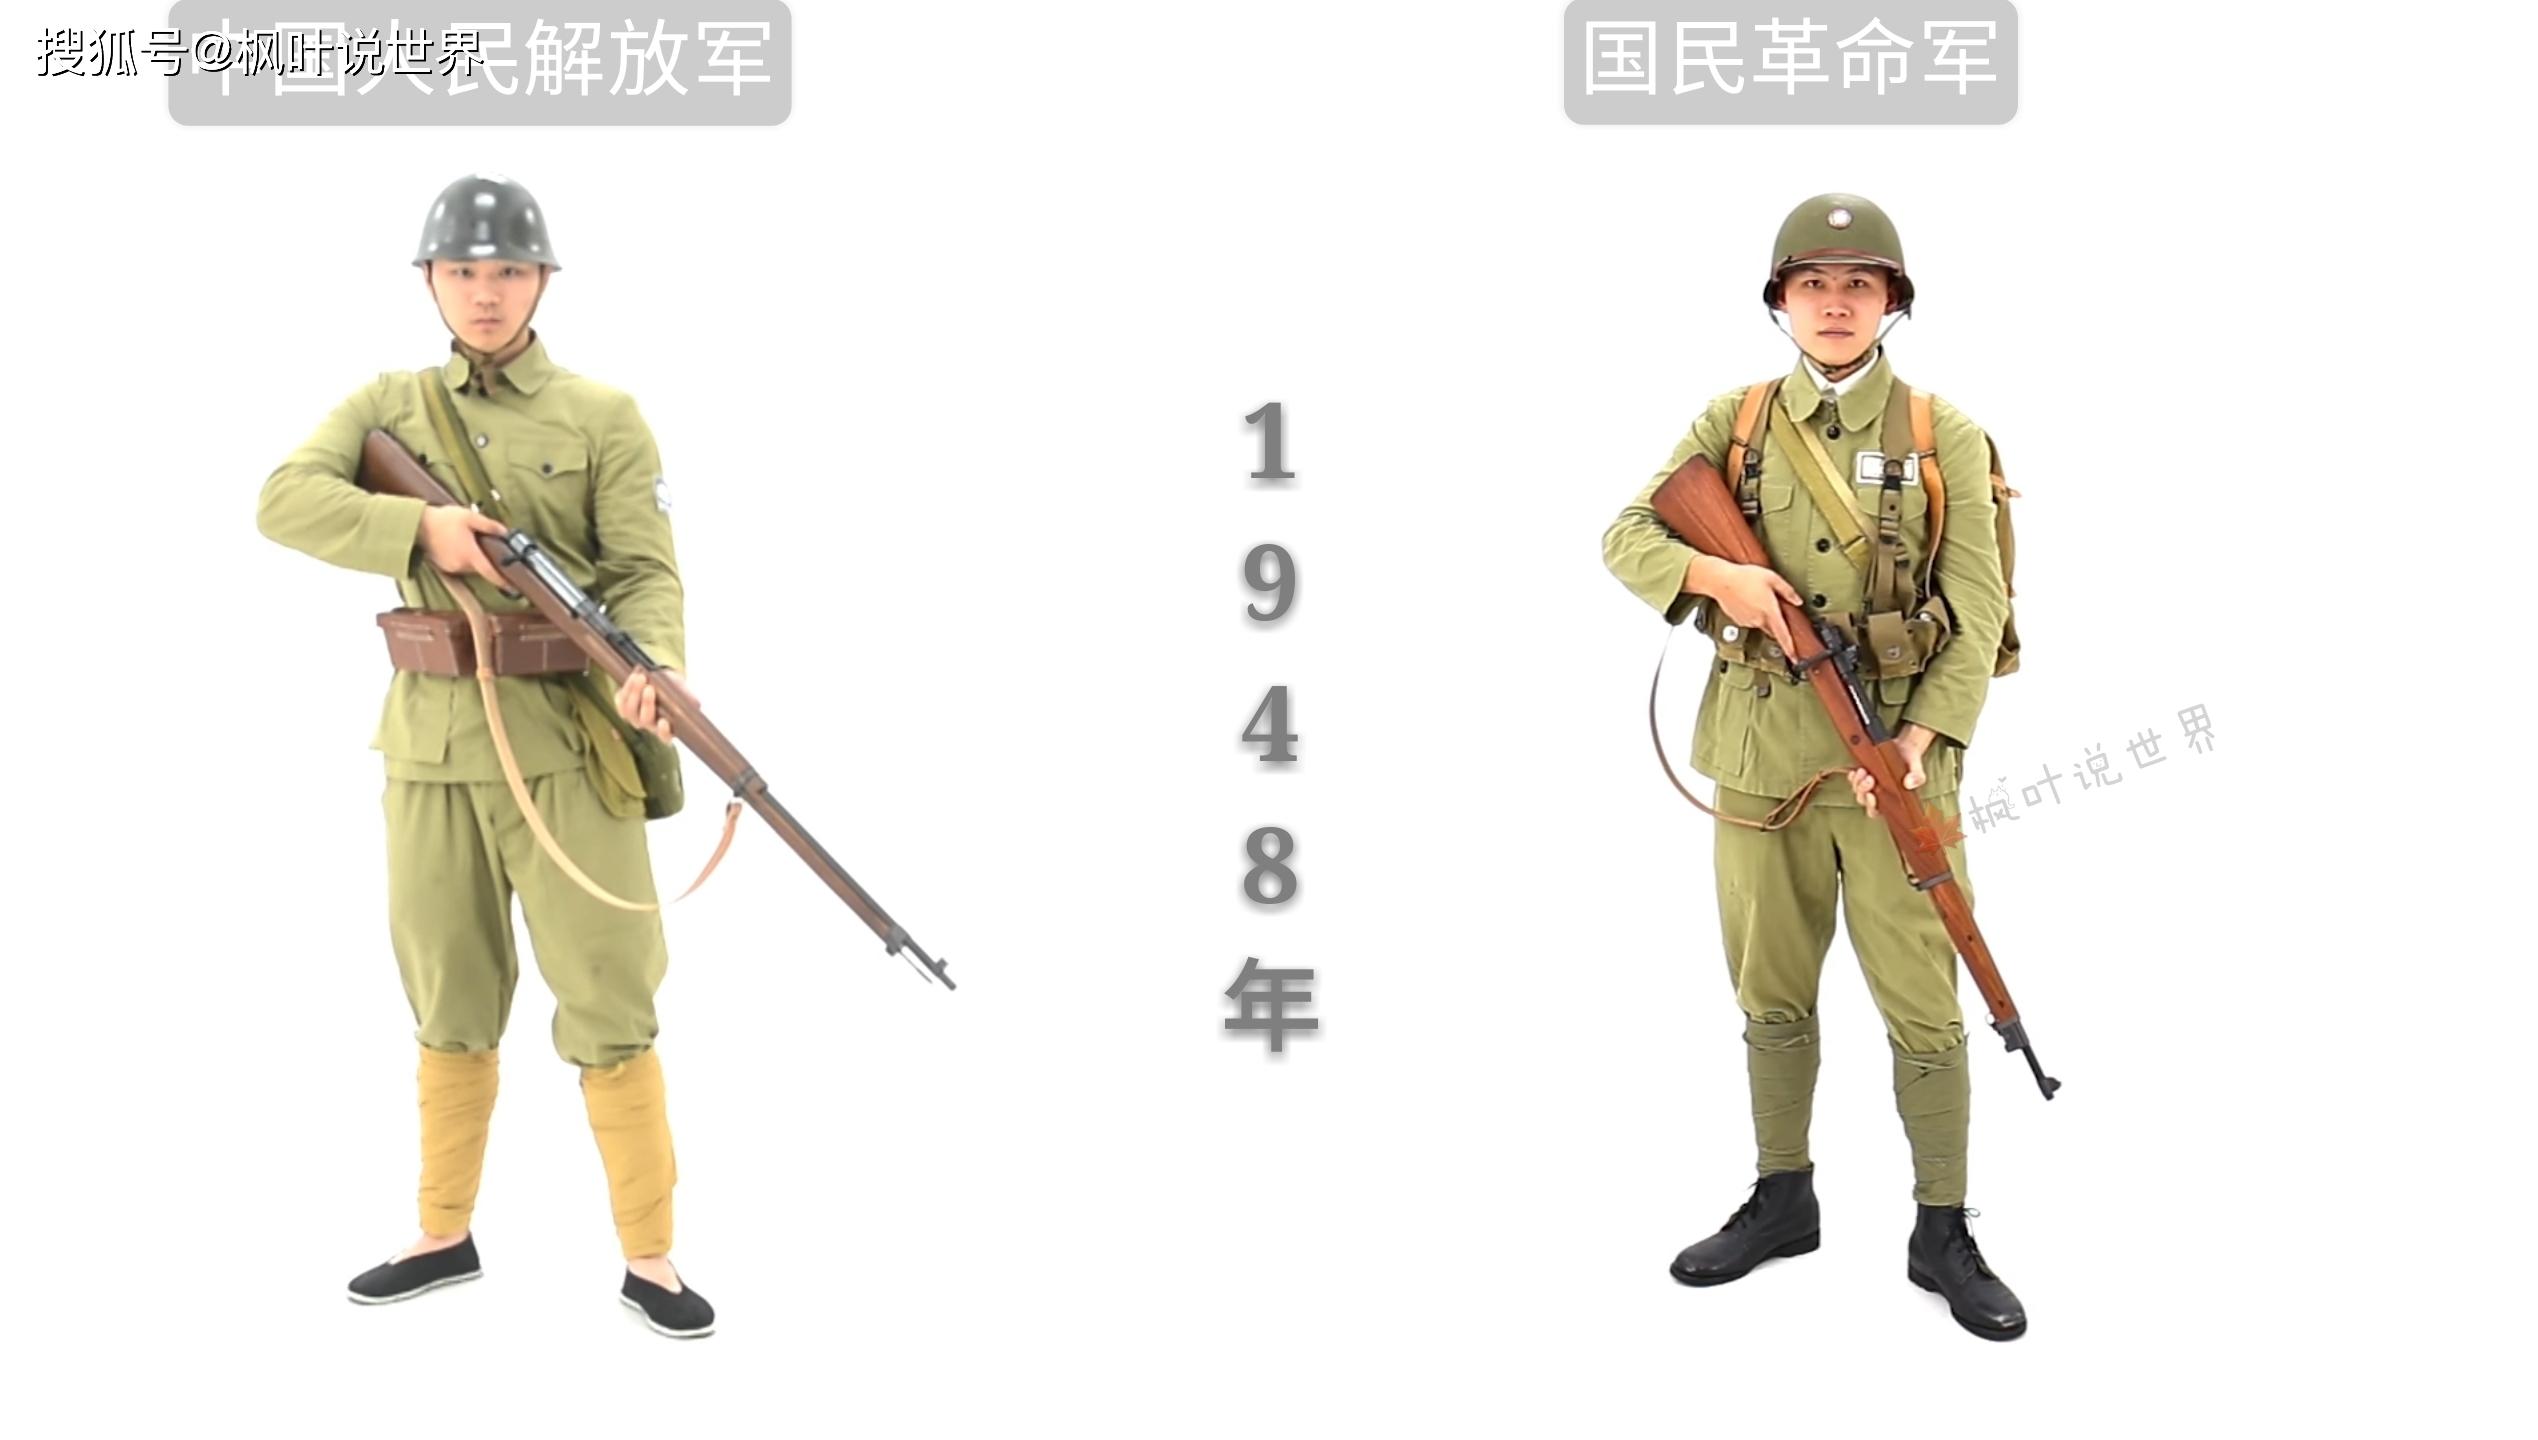 1912年武昌起义时期 中国近代陆军军服 1924年直奉战争时期 中国近代